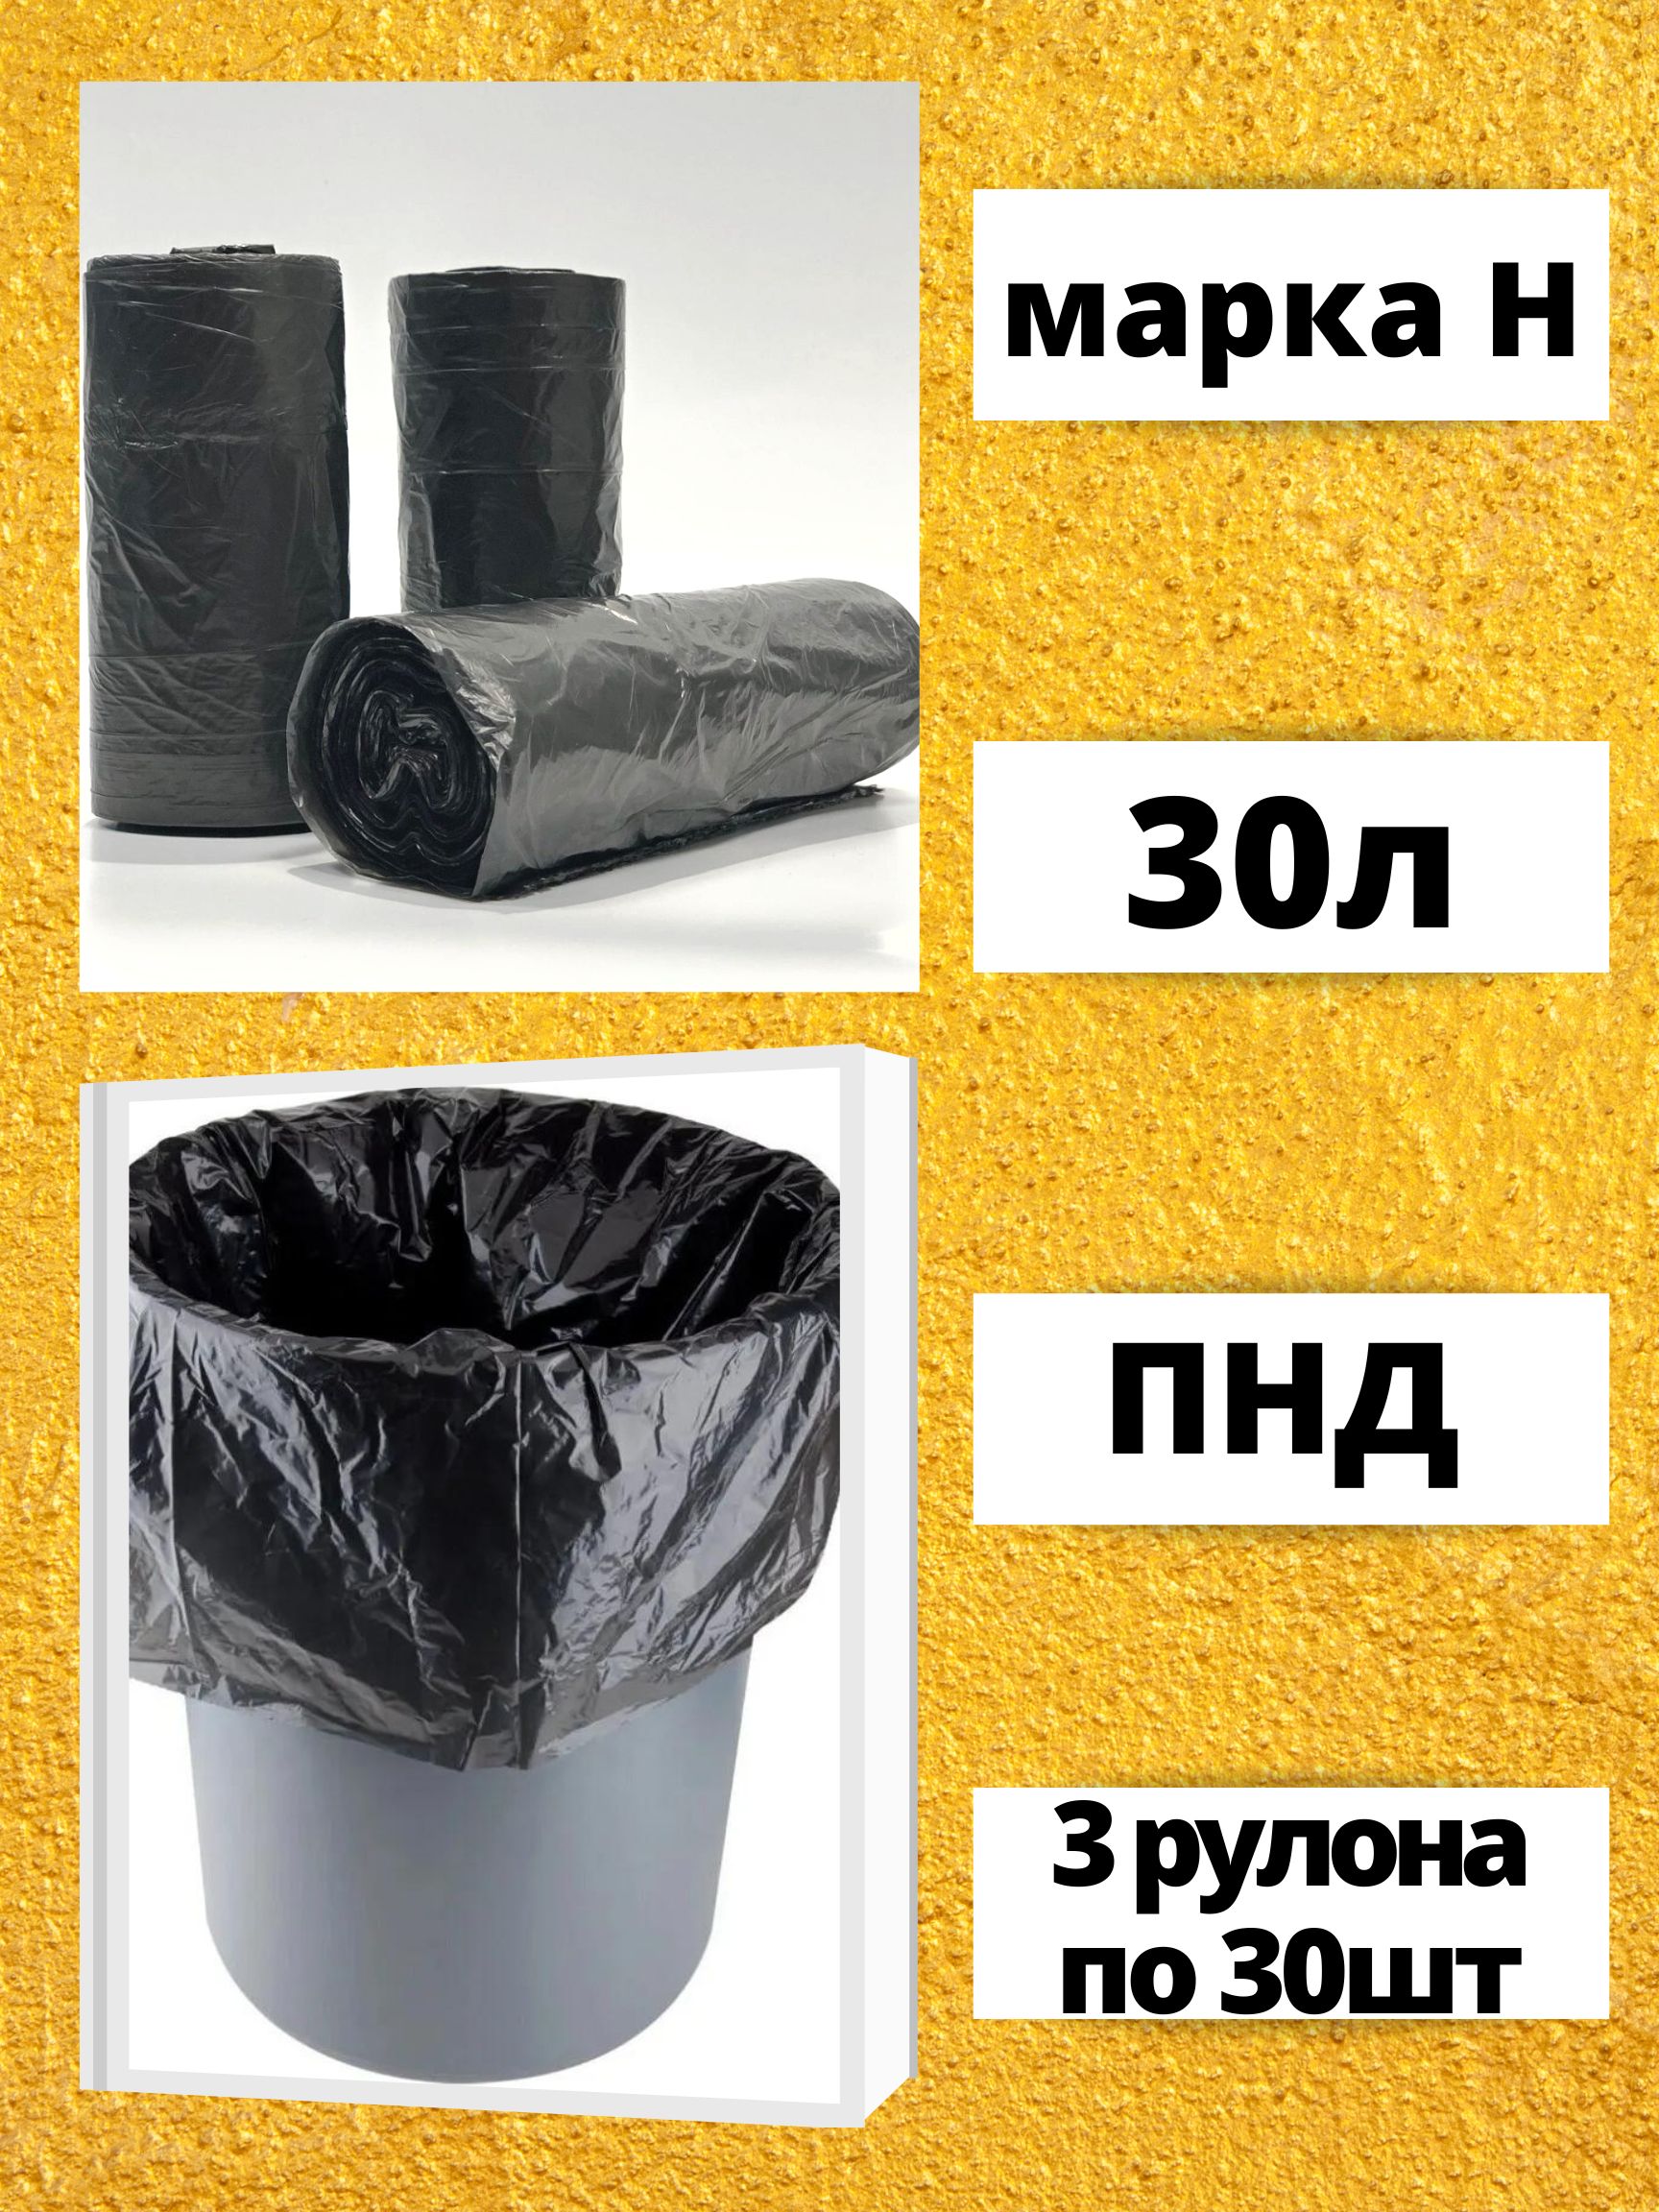 Пакеты для мусора БытСервис 30 литров 3 рулона по 30 штук черные марка Н R610